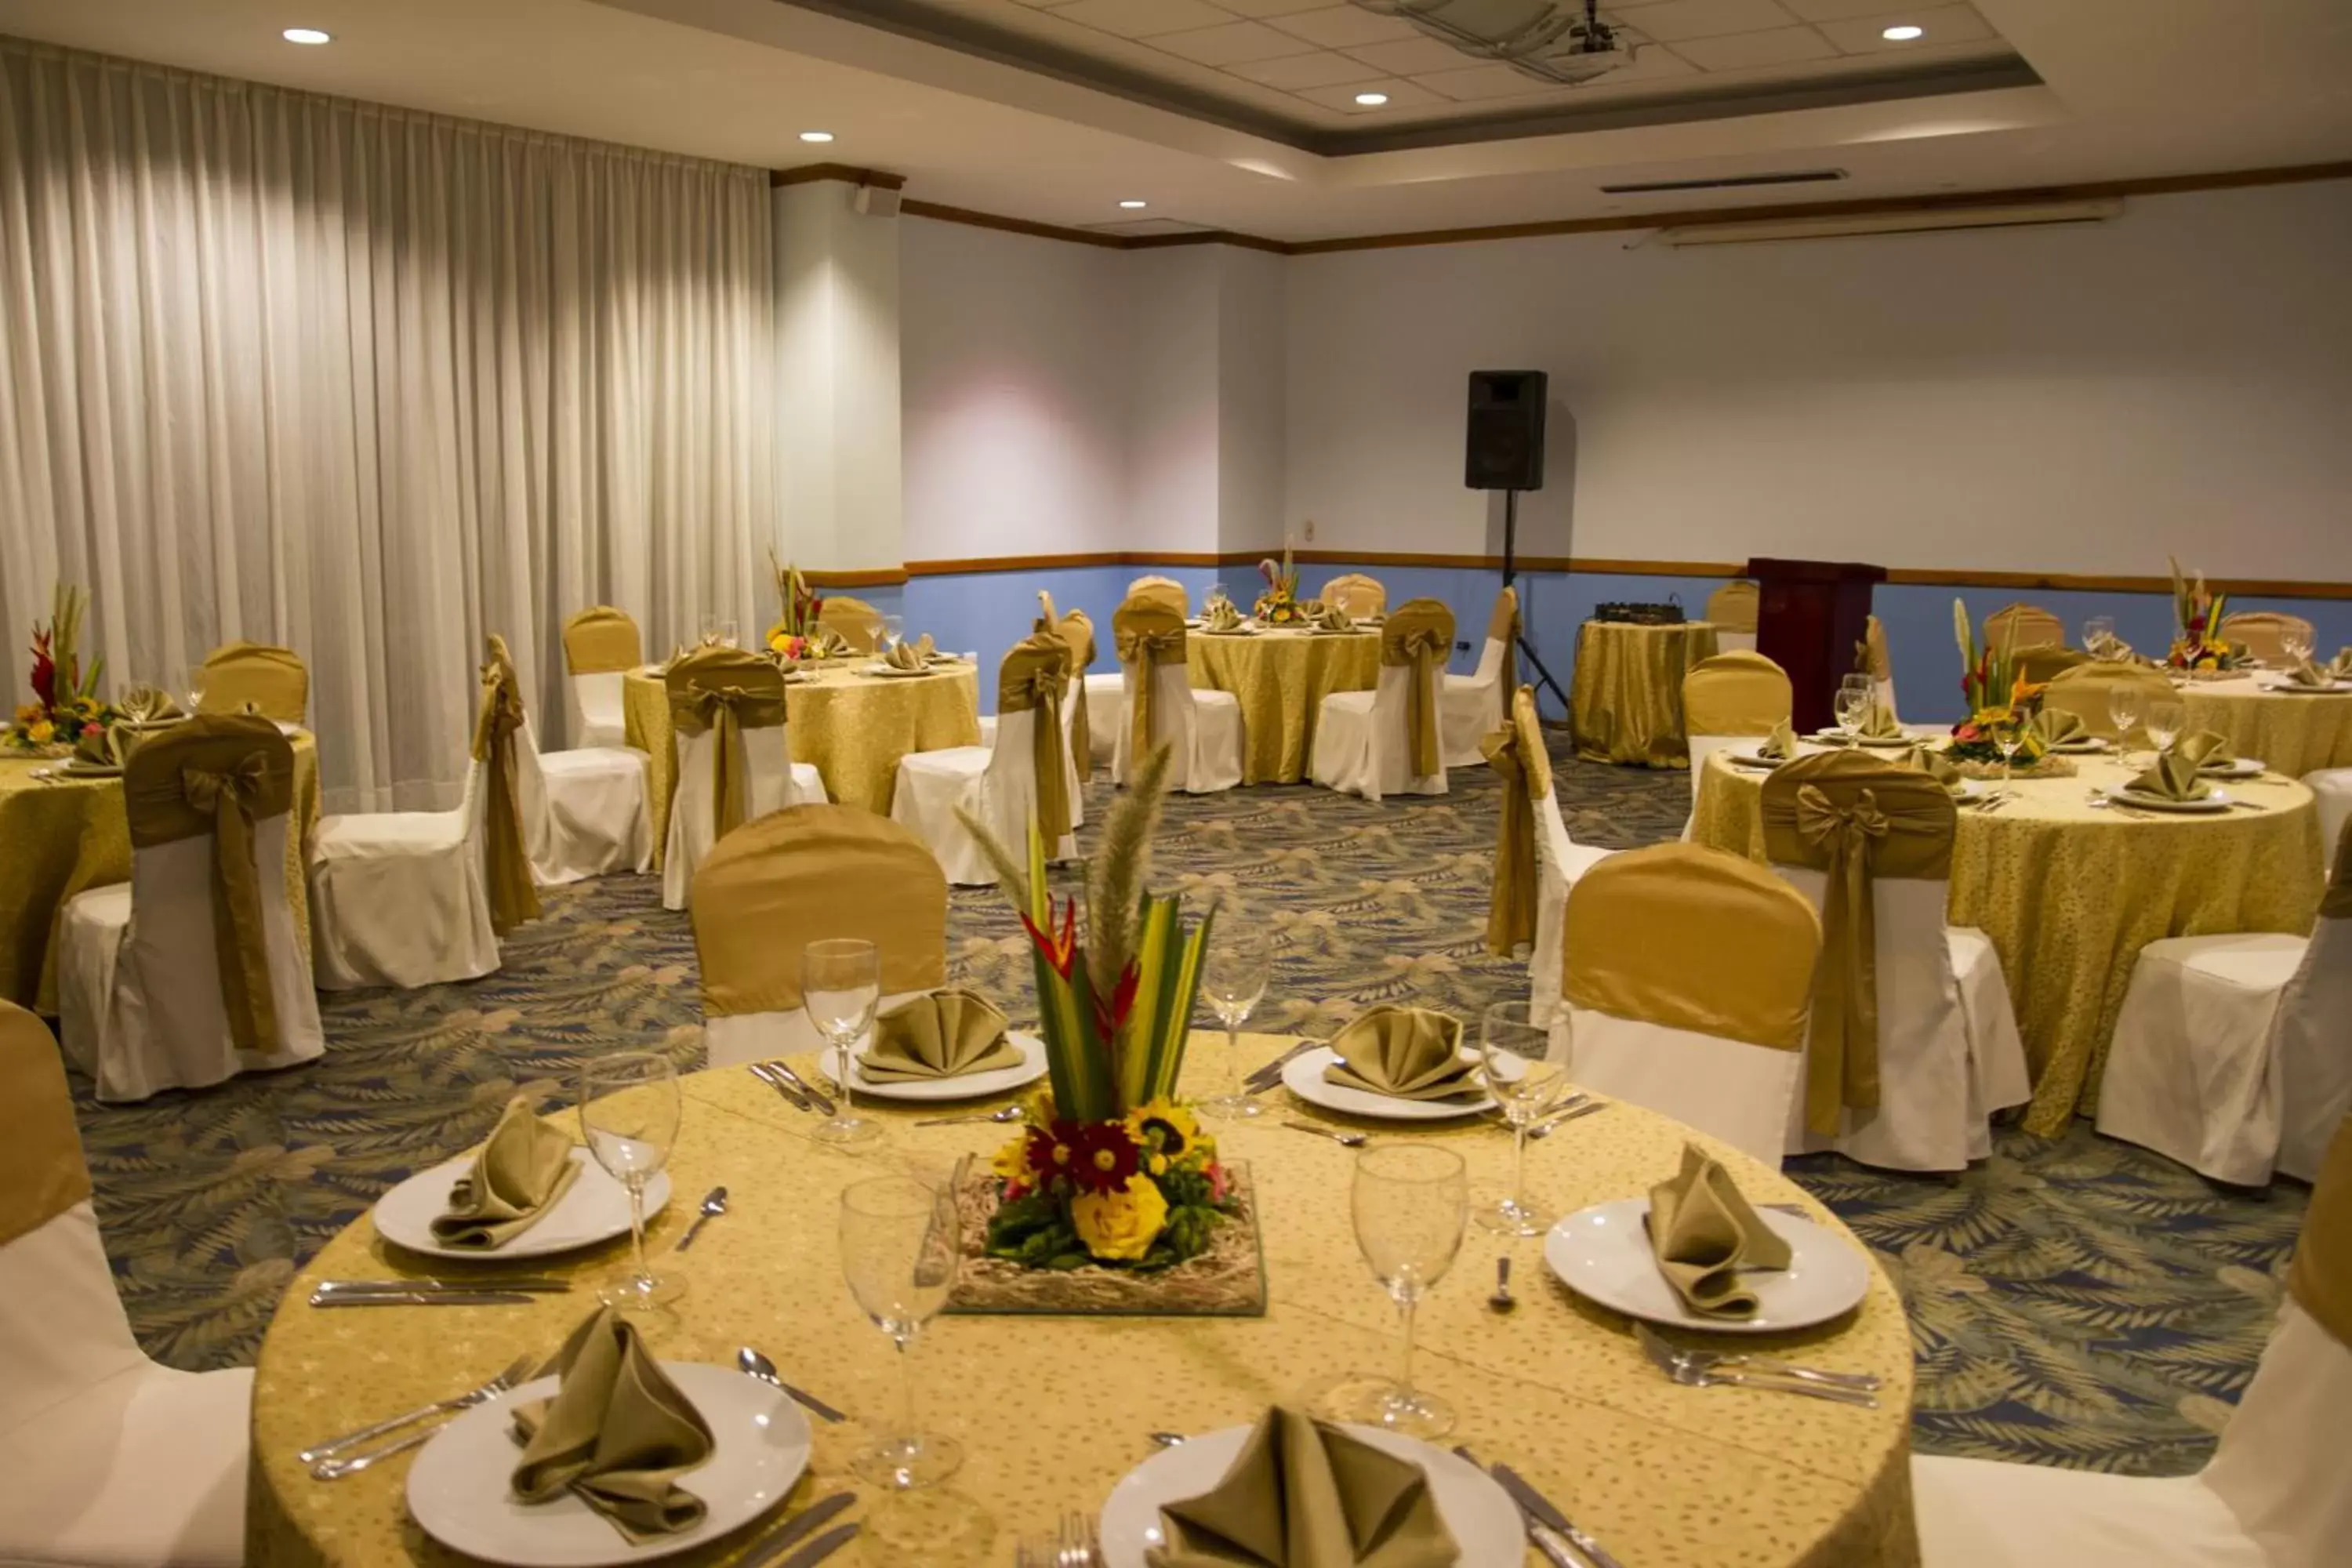 Banquet/Function facilities, Banquet Facilities in MantaHost Hotel